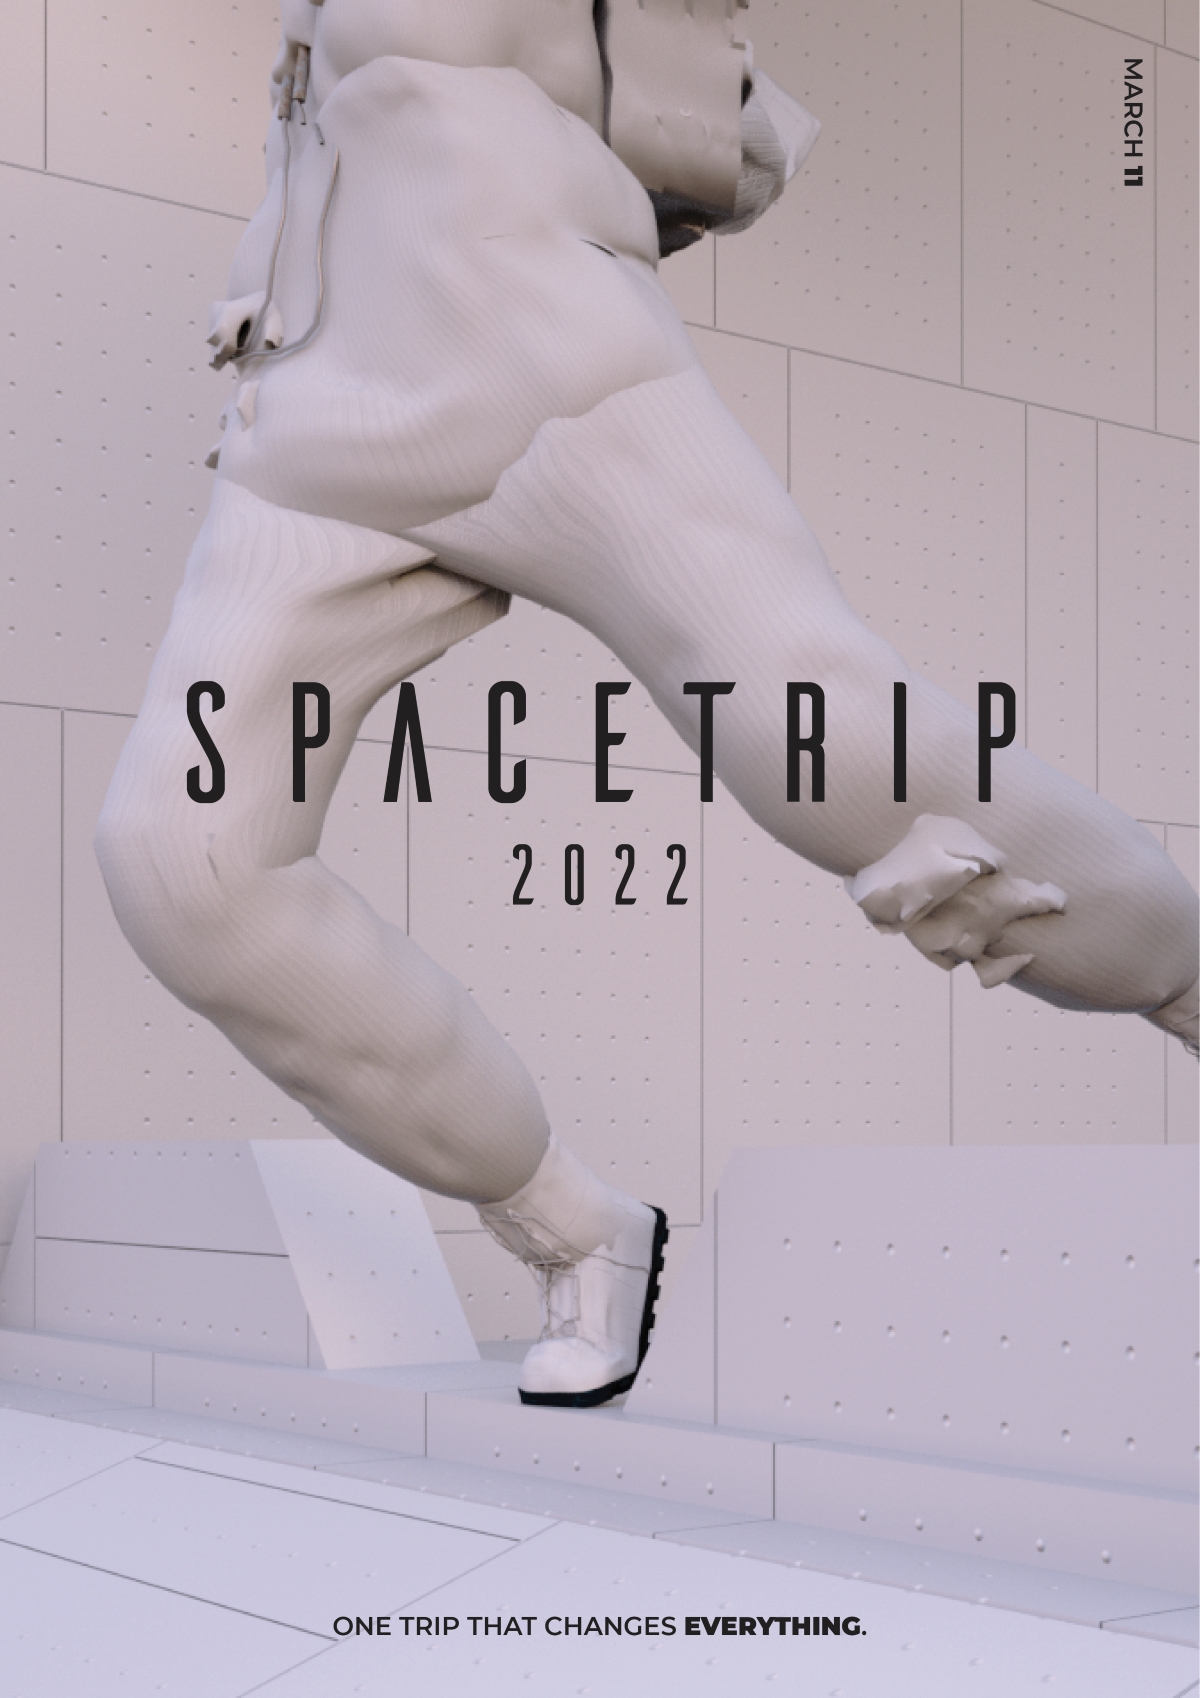 Spacetrip